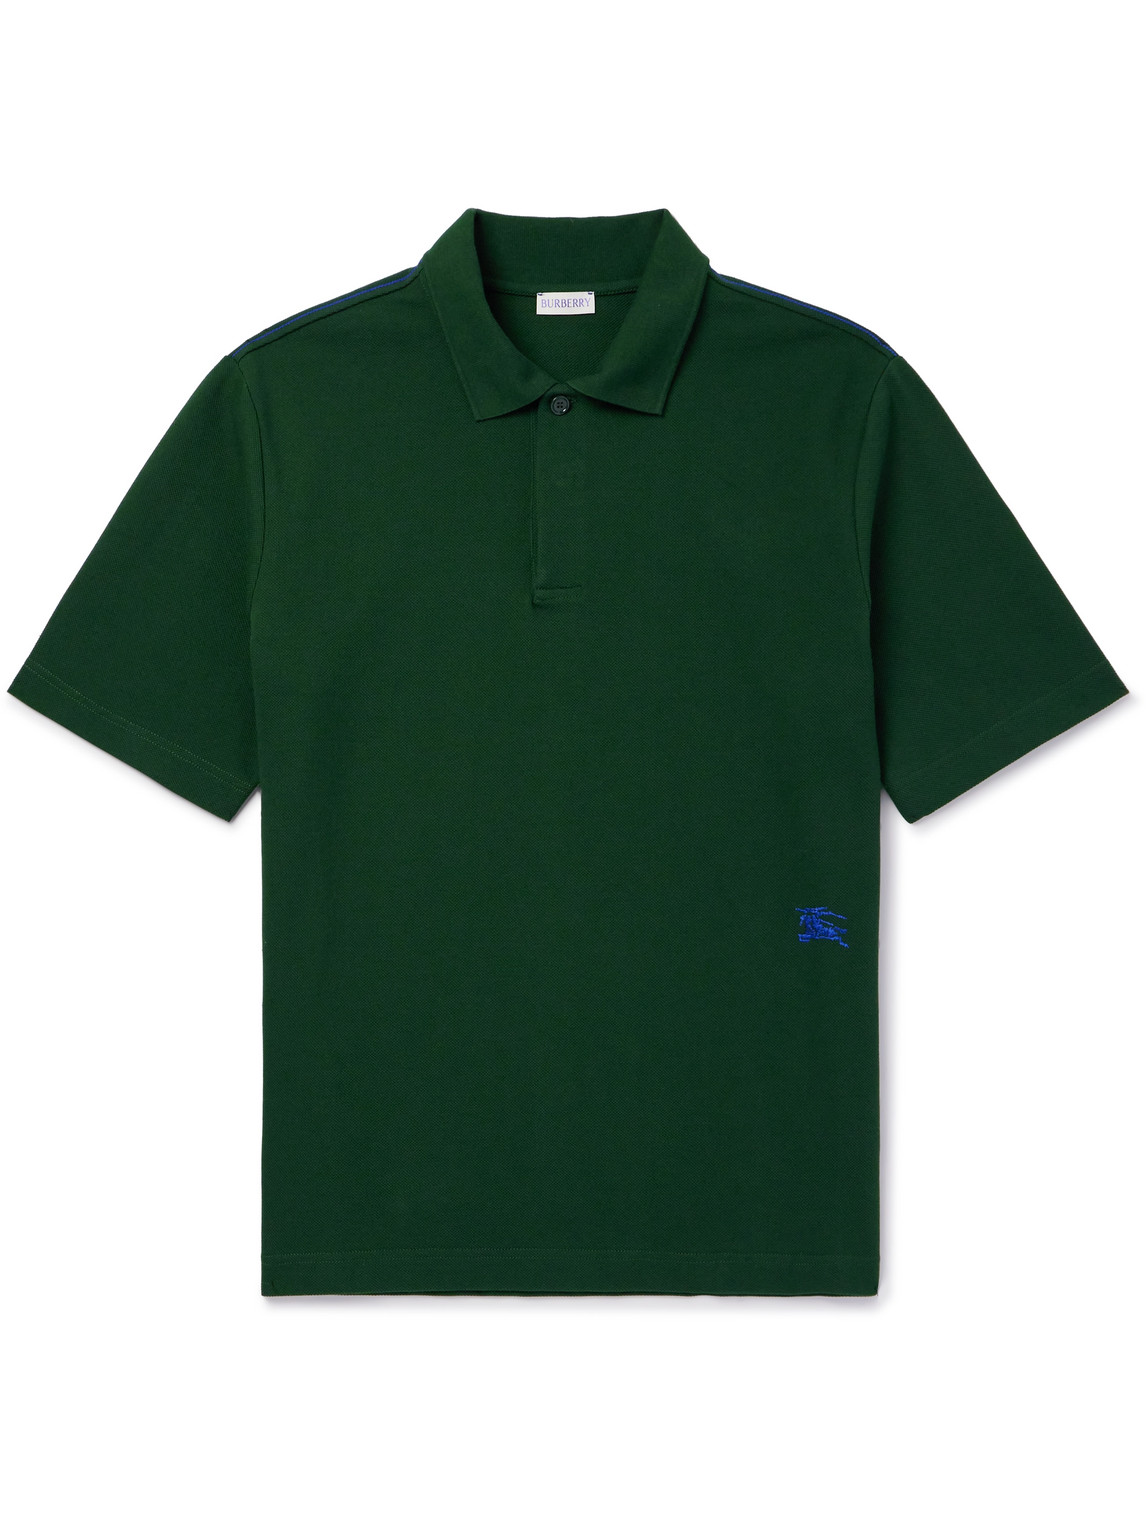 Burberry - Logo-Embroidered Cotton-Piqué Polo Shirt - Men - Green - XS von Burberry